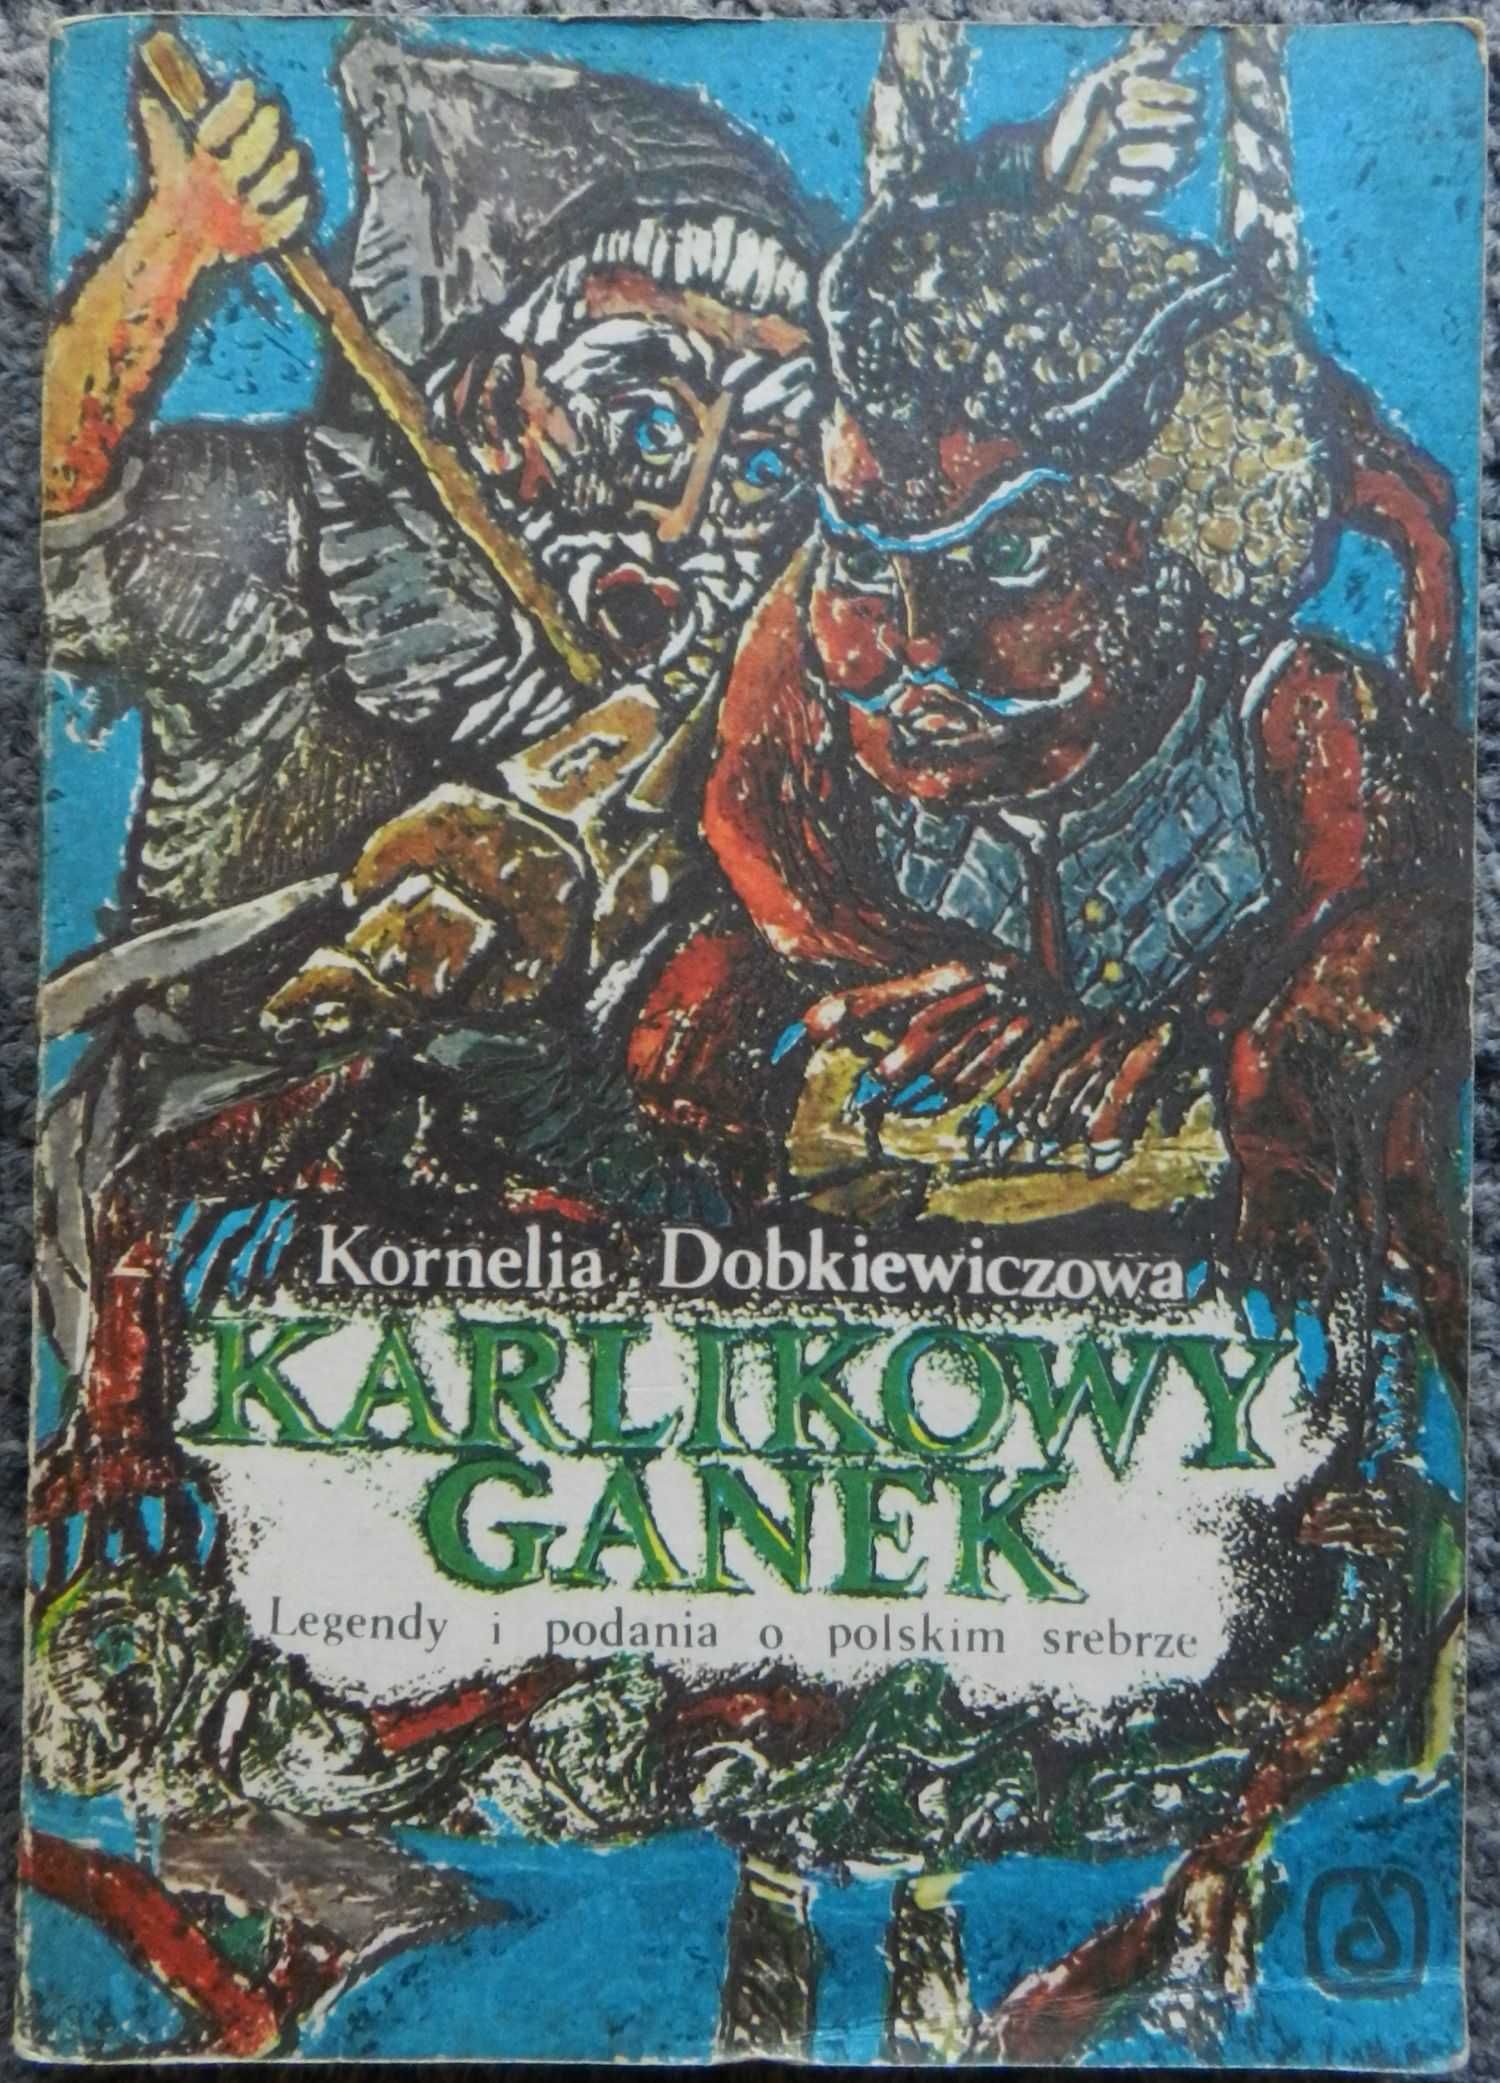 Dobkiewiczowa K. - Karlikowy ganek legendy i podania o polskim srebrze